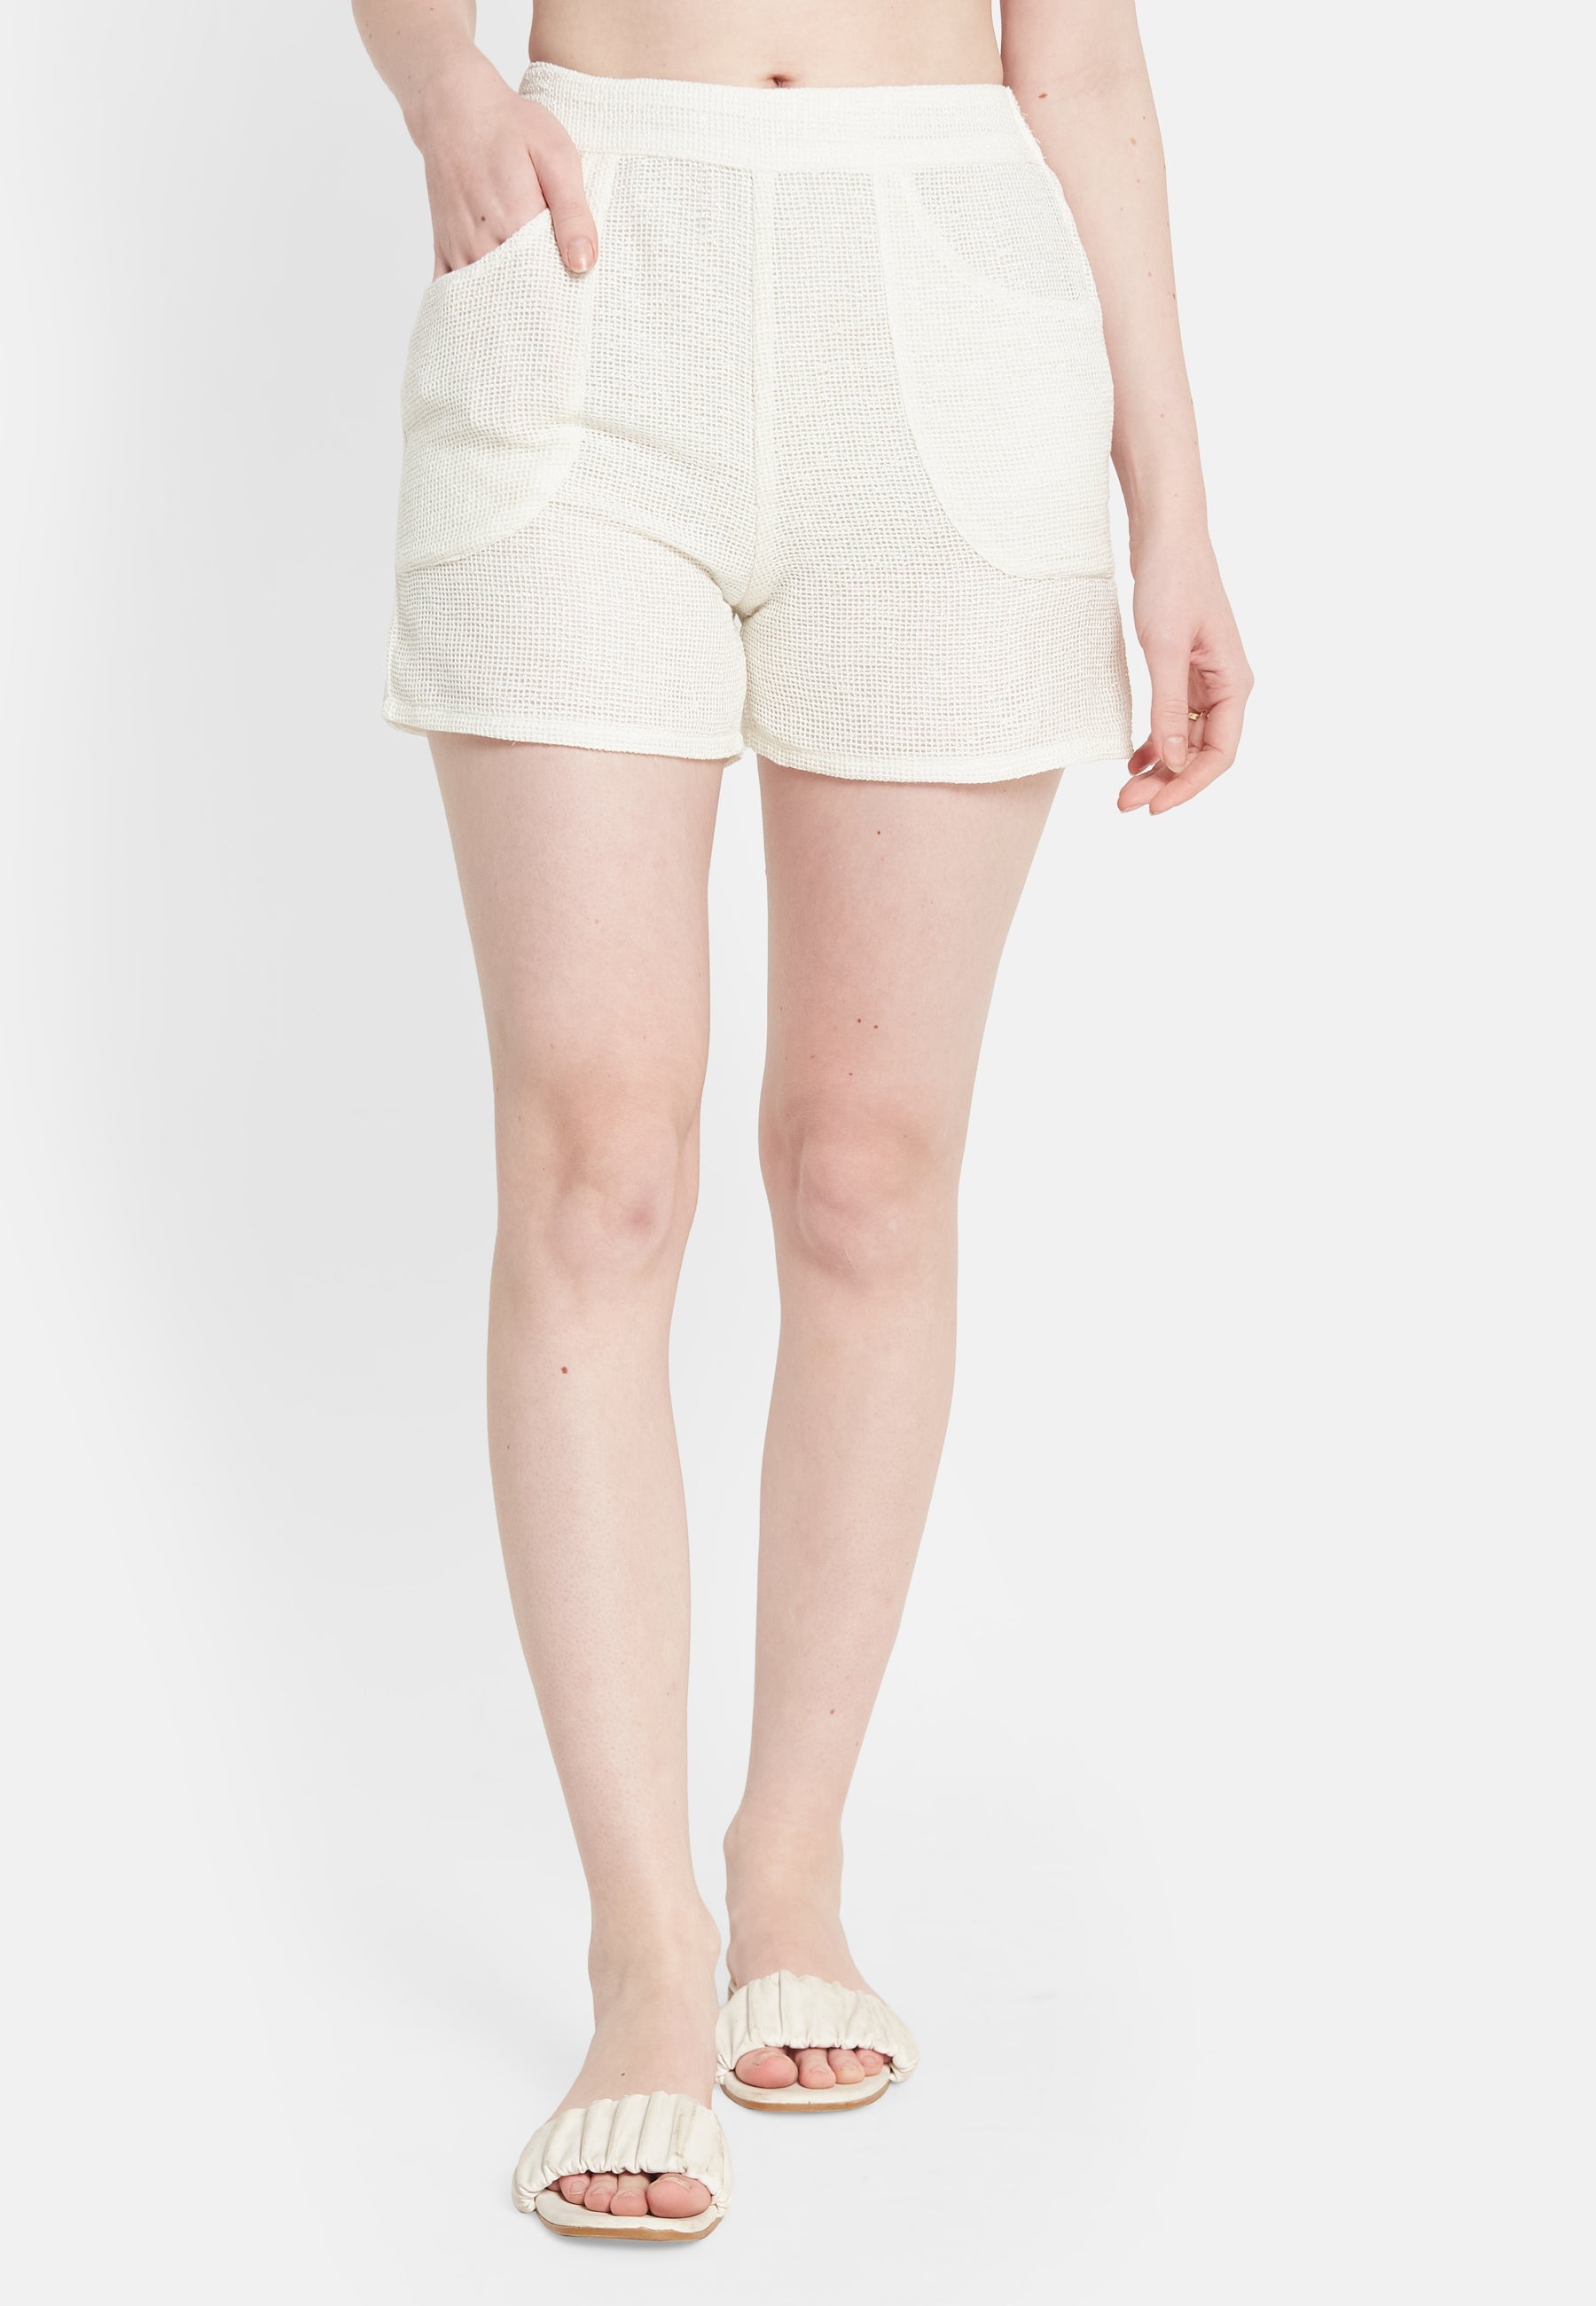 Bay White Shorts